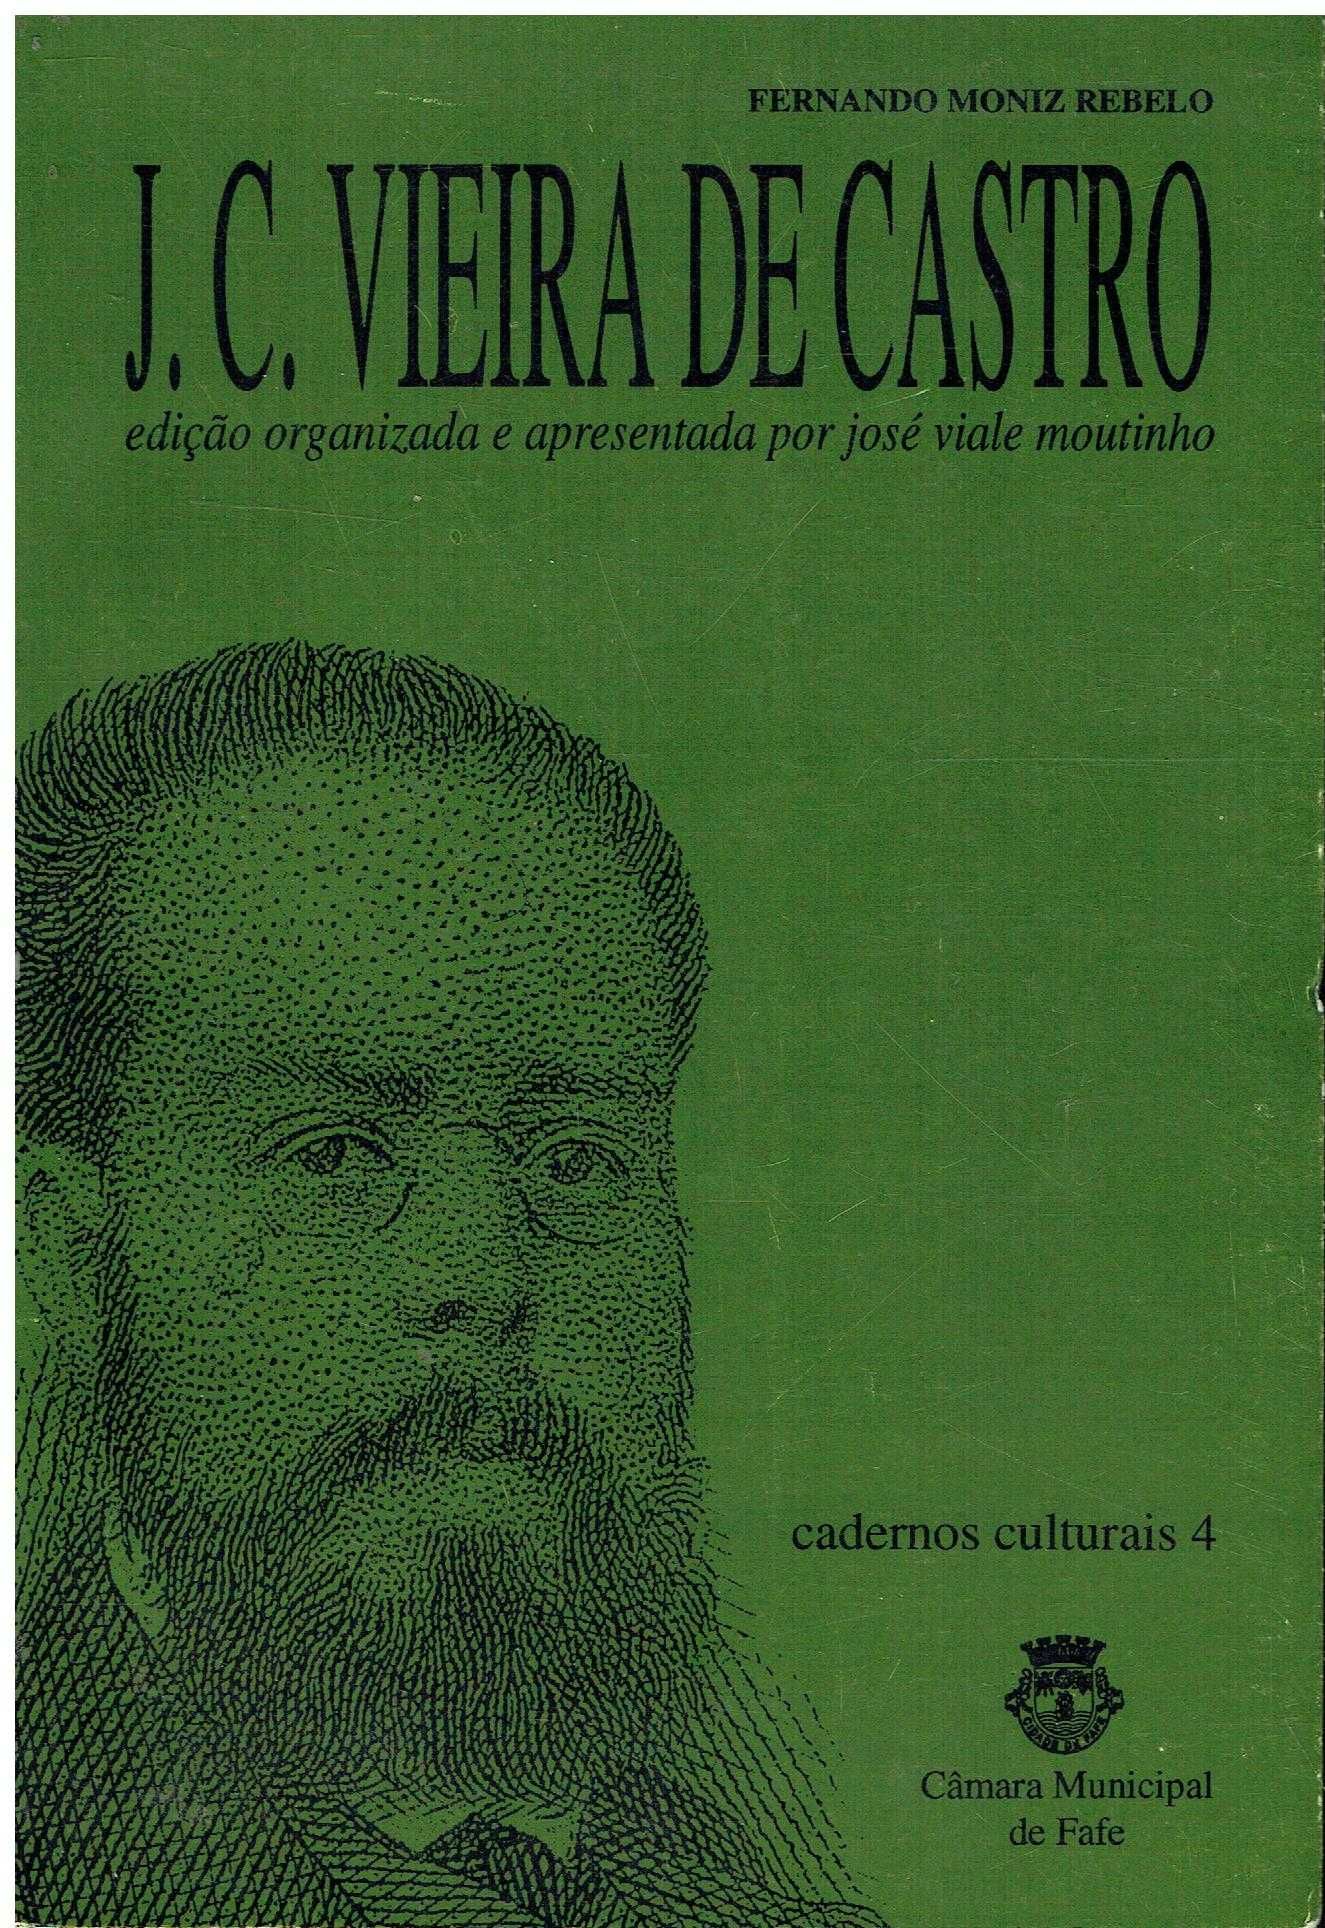 12182

J. C. Vieira de Castro  
por Fernando Moniz Rebelo